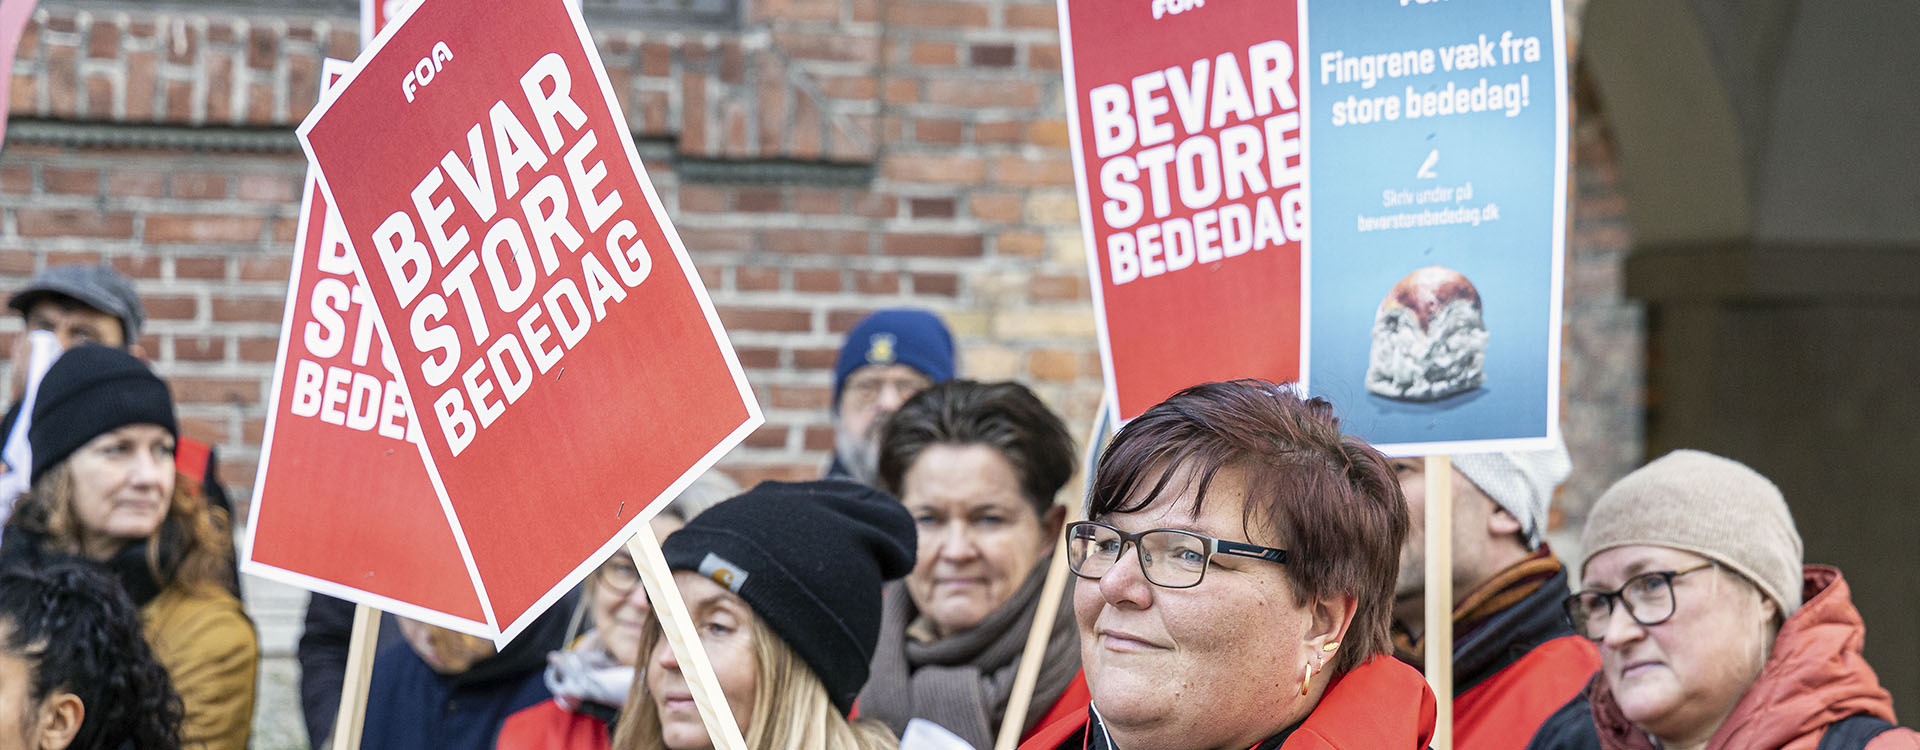 Ny måling: 75% af danskerne siger NEJ til regeringens planer!